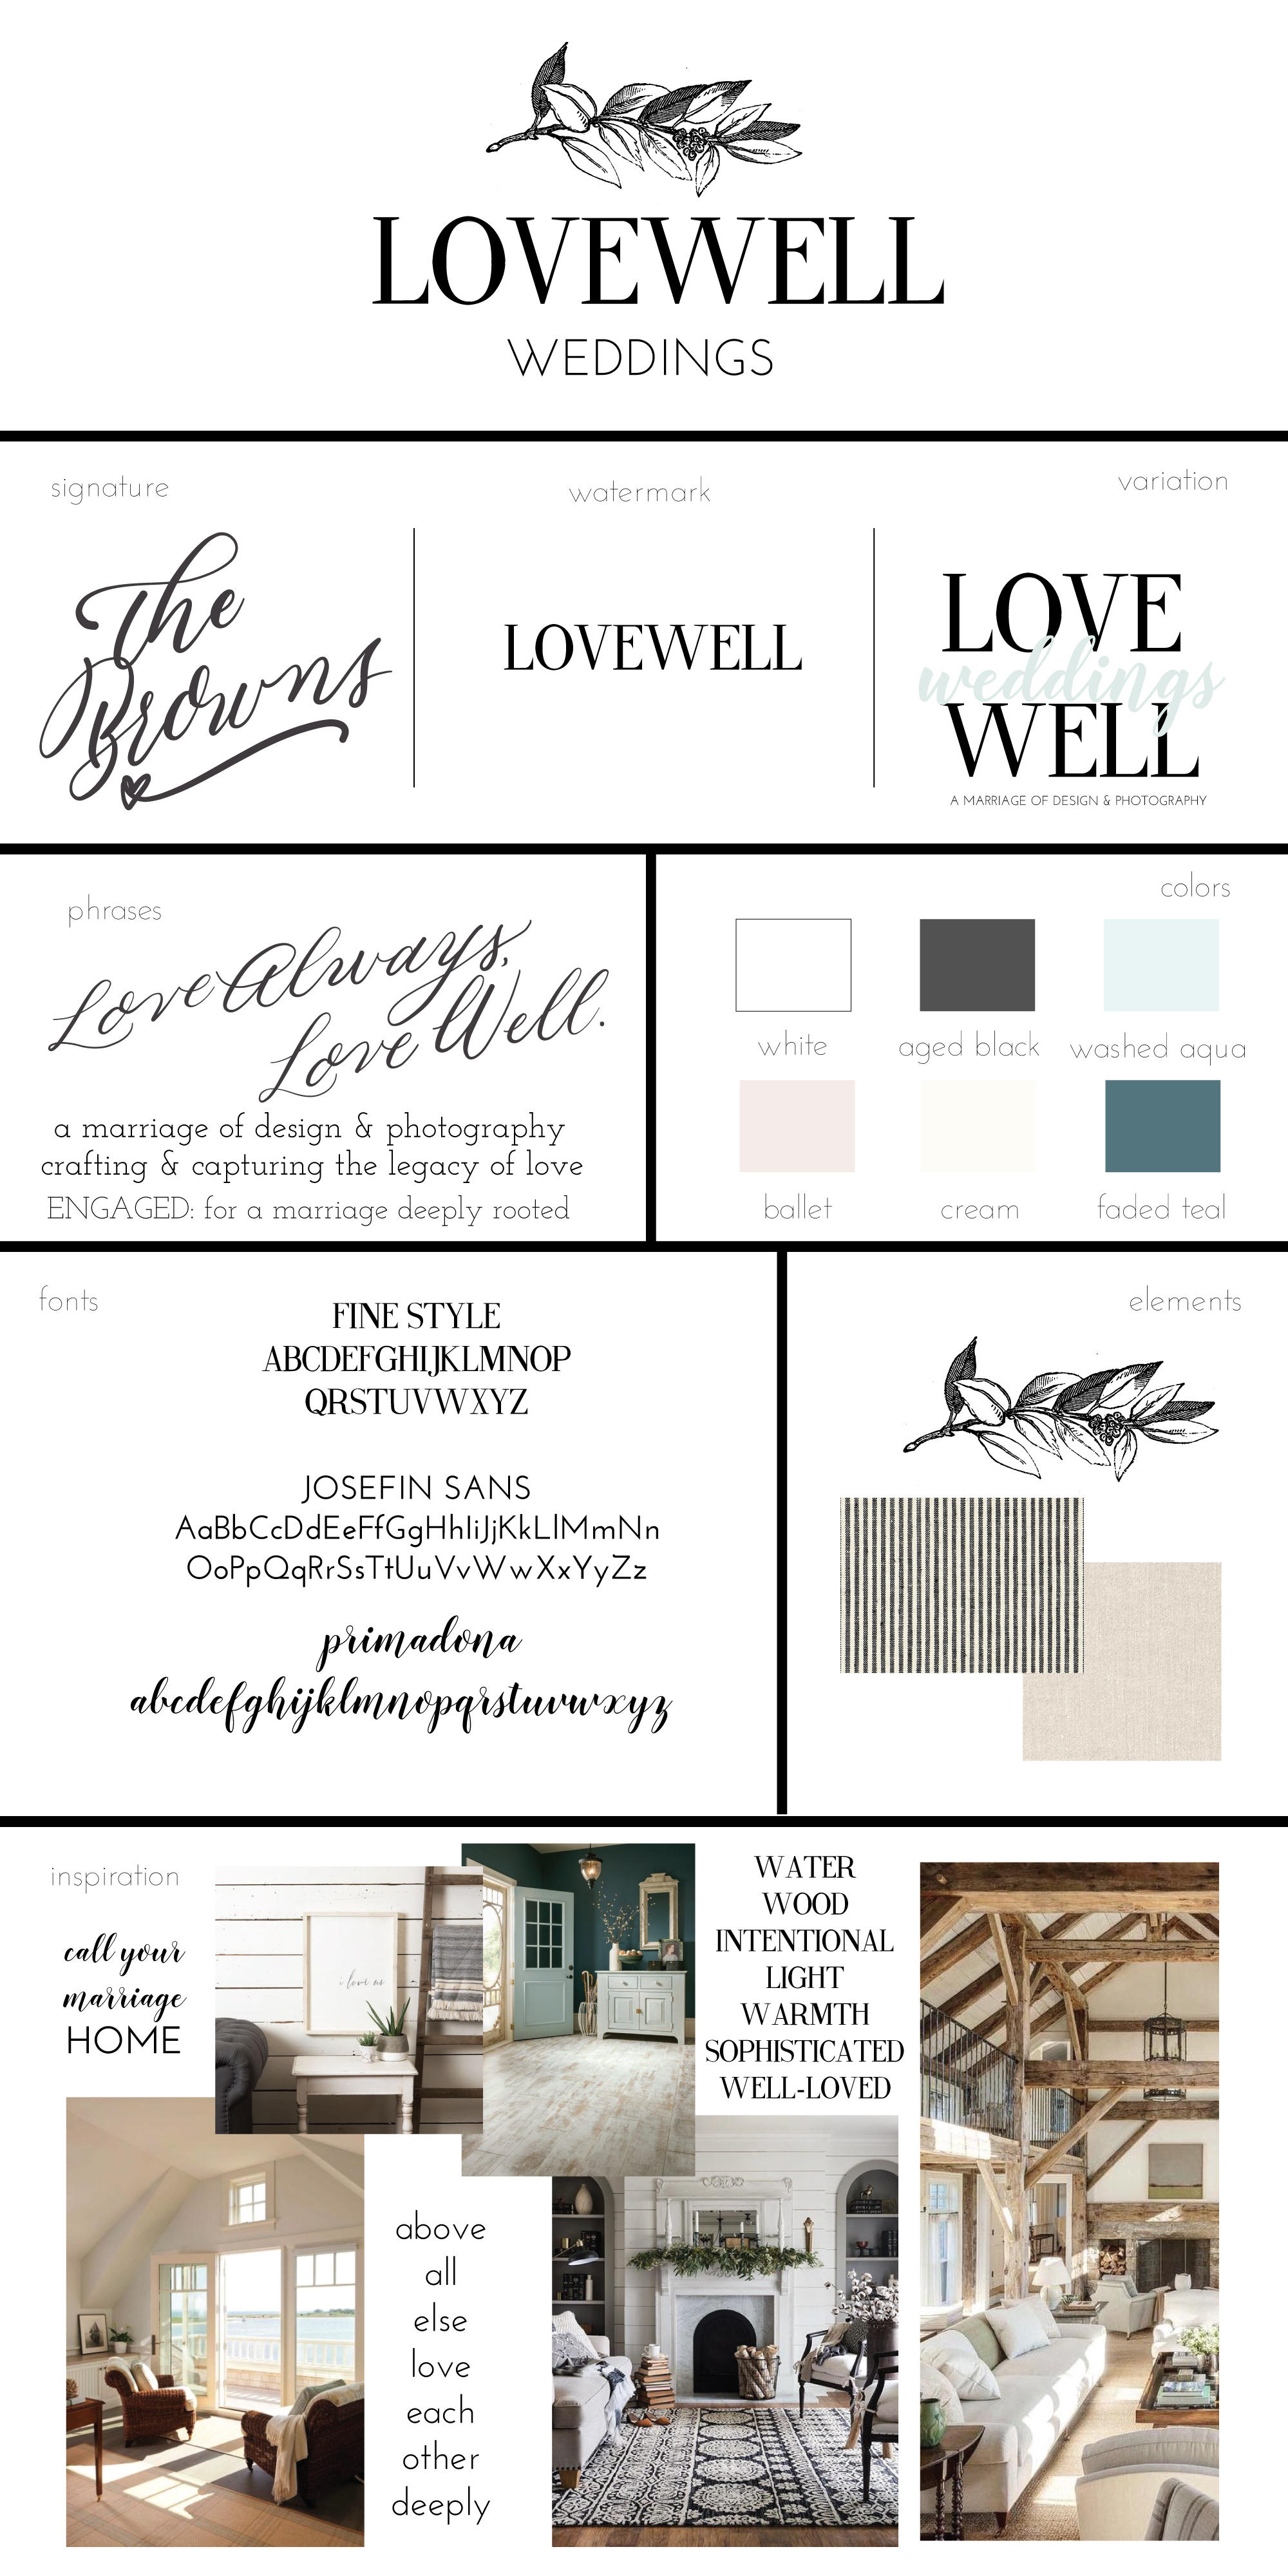 lovewell-weddings-branding-board-final